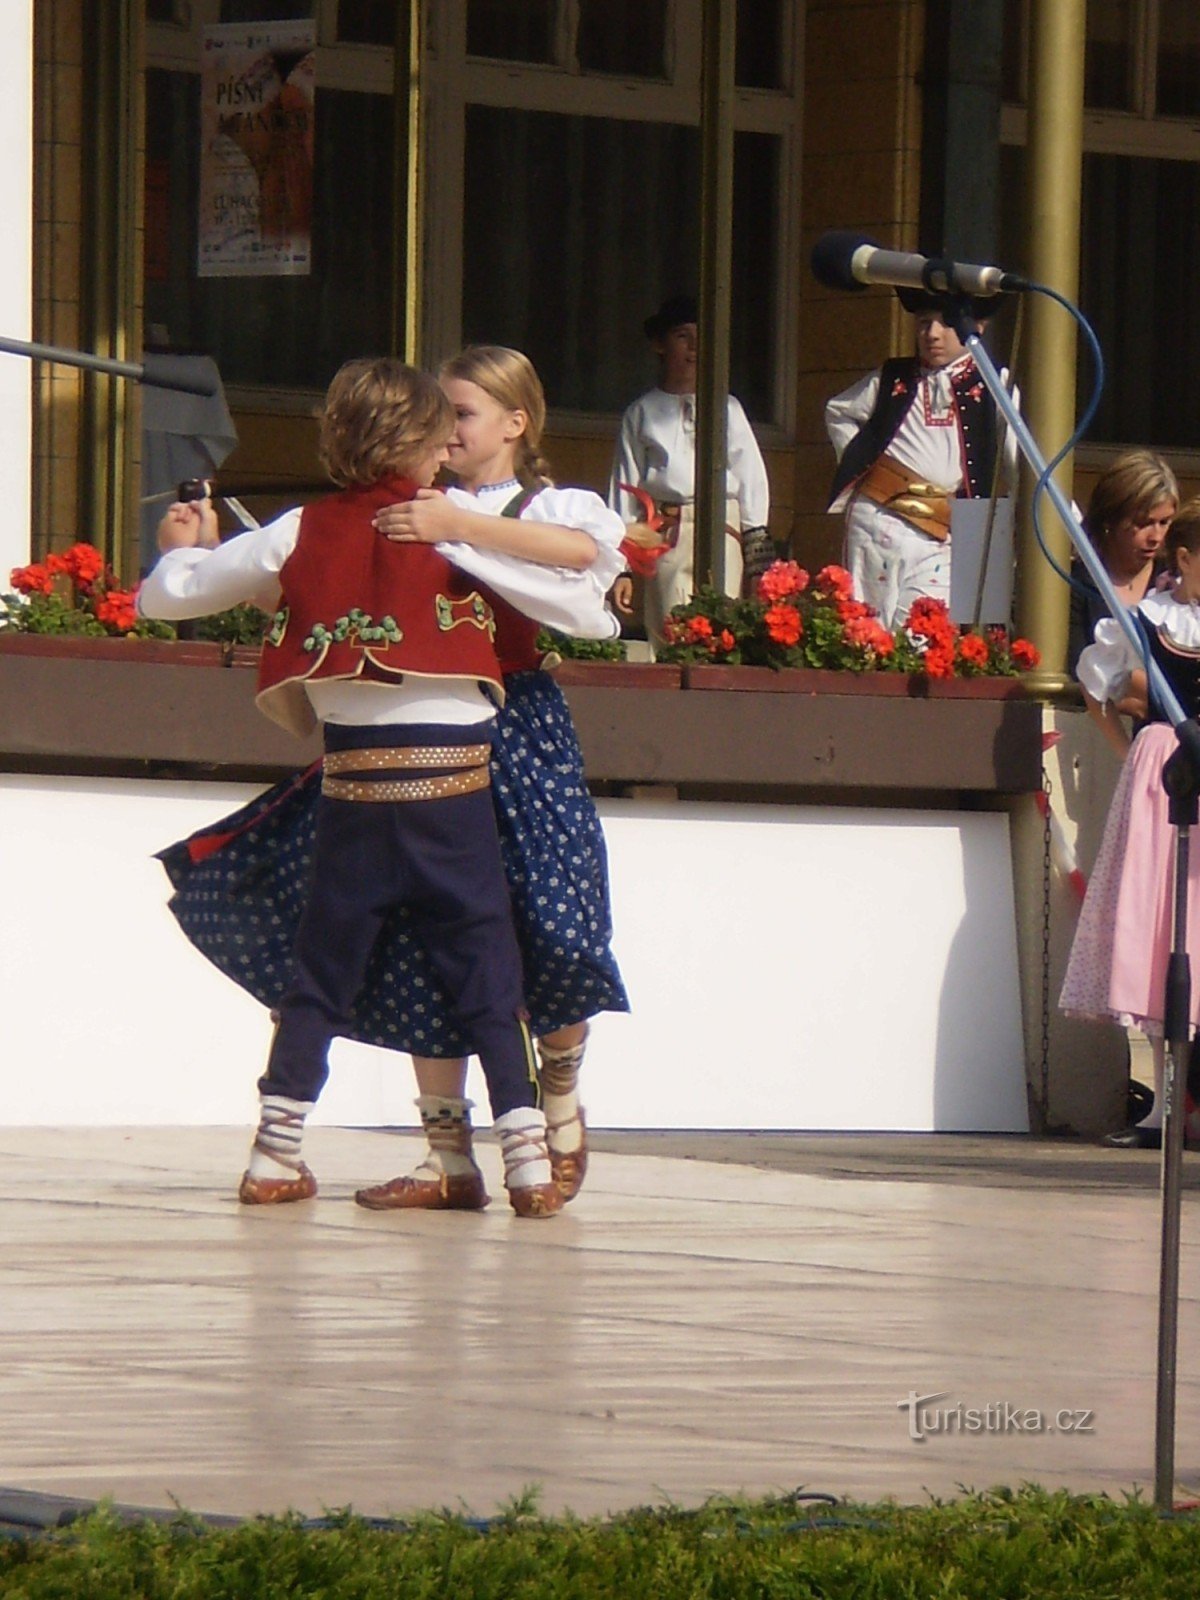 Luhačovice - Festival for børns folklore-ensembler Sang og dans